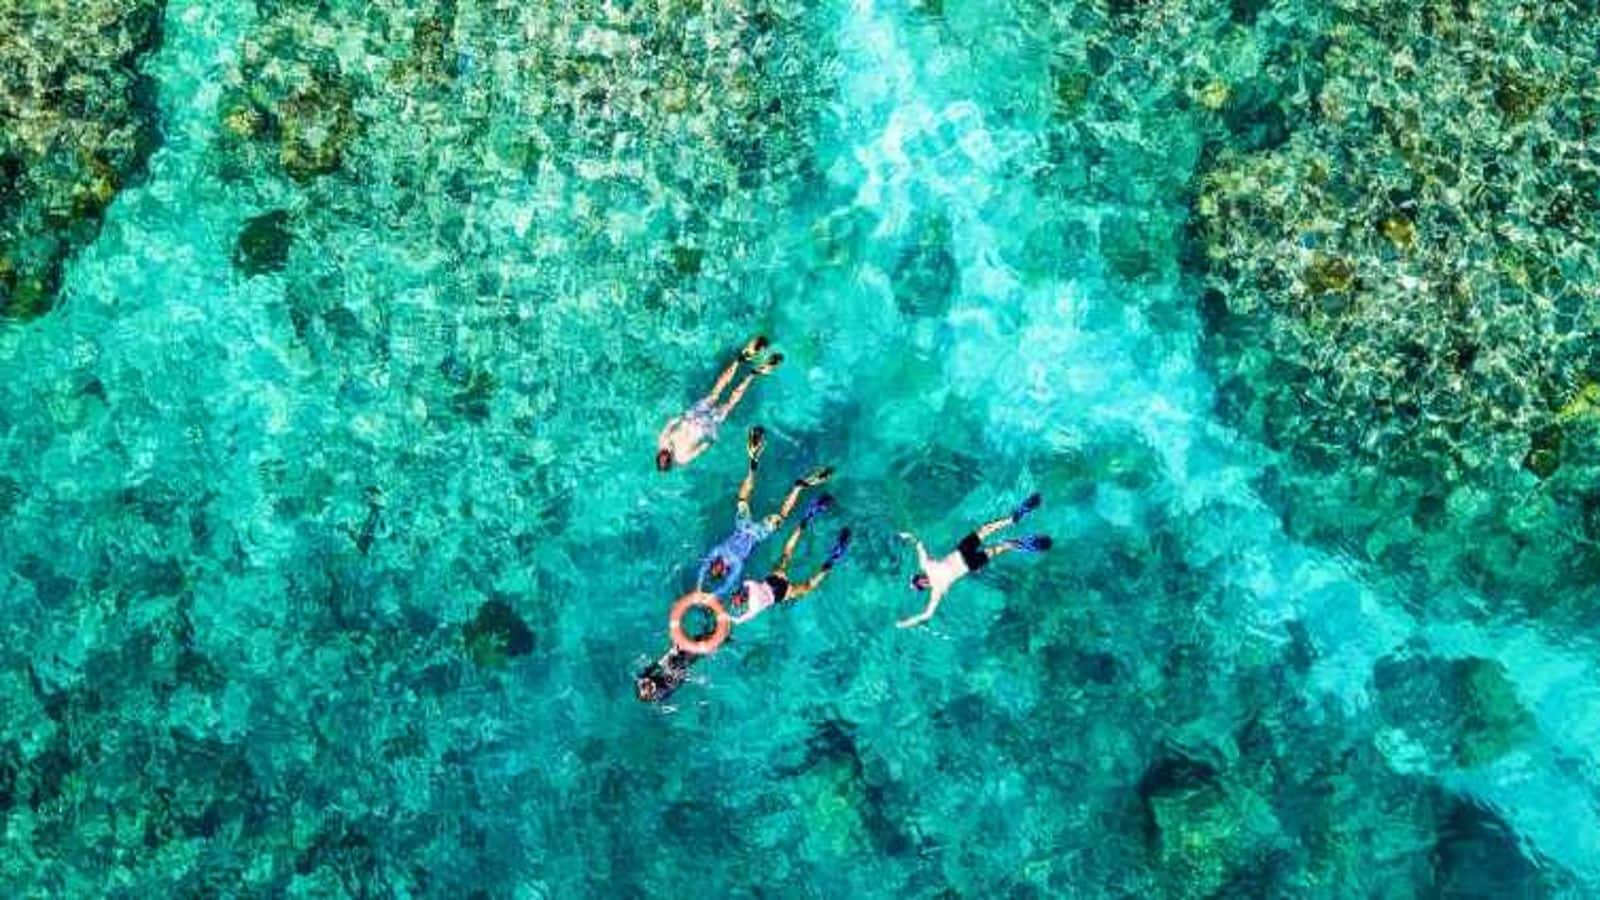 Plunge into Cairns, Australia's aquatic adventures